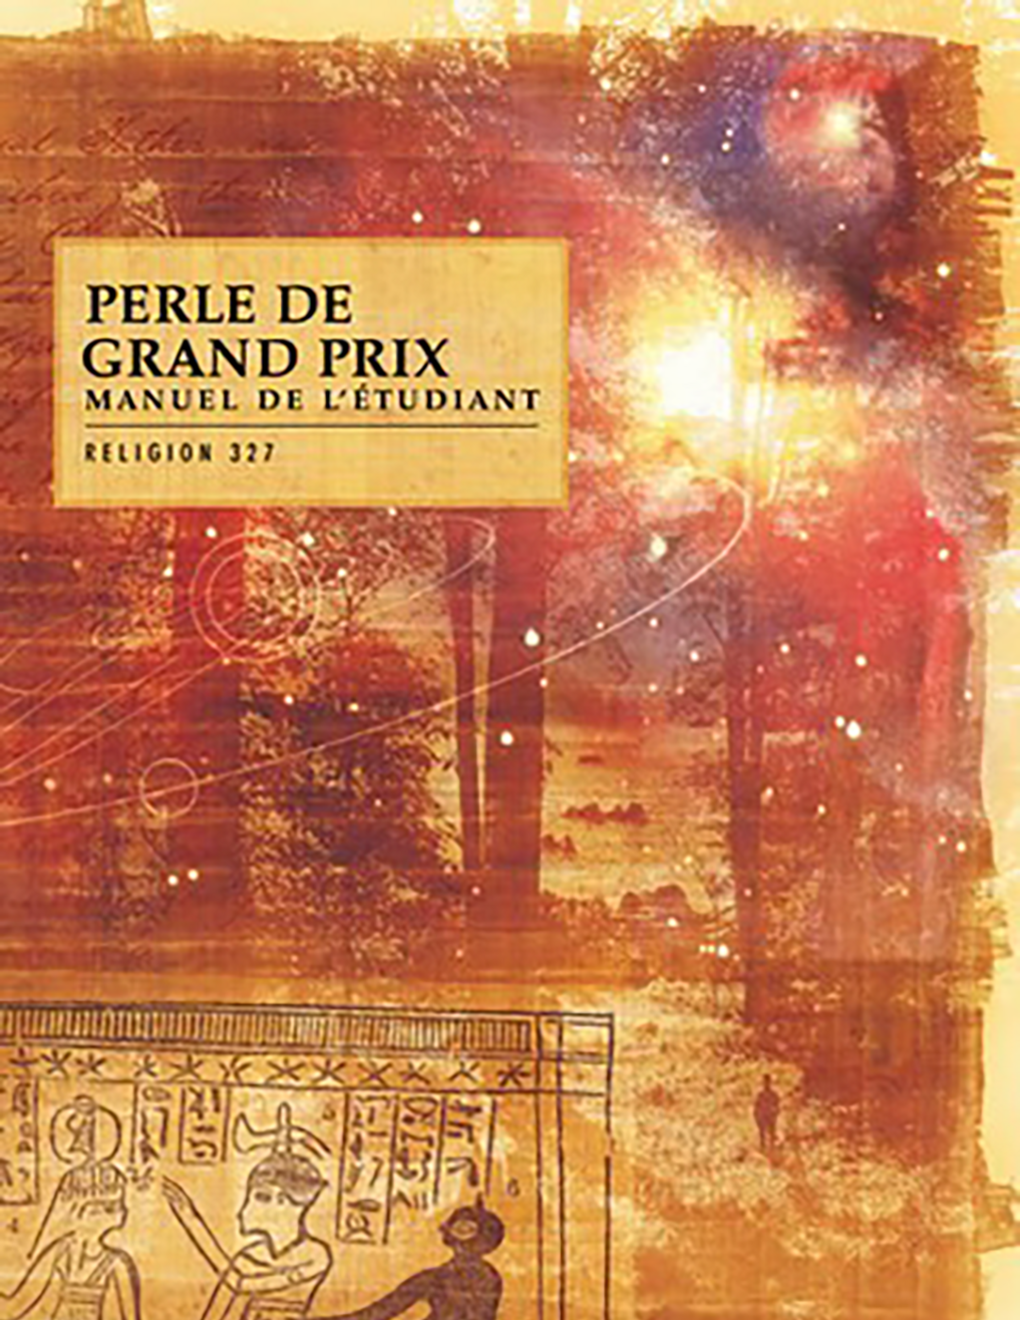 Perle de Grand Prix, manuel de l’étudiant (Religion 327)